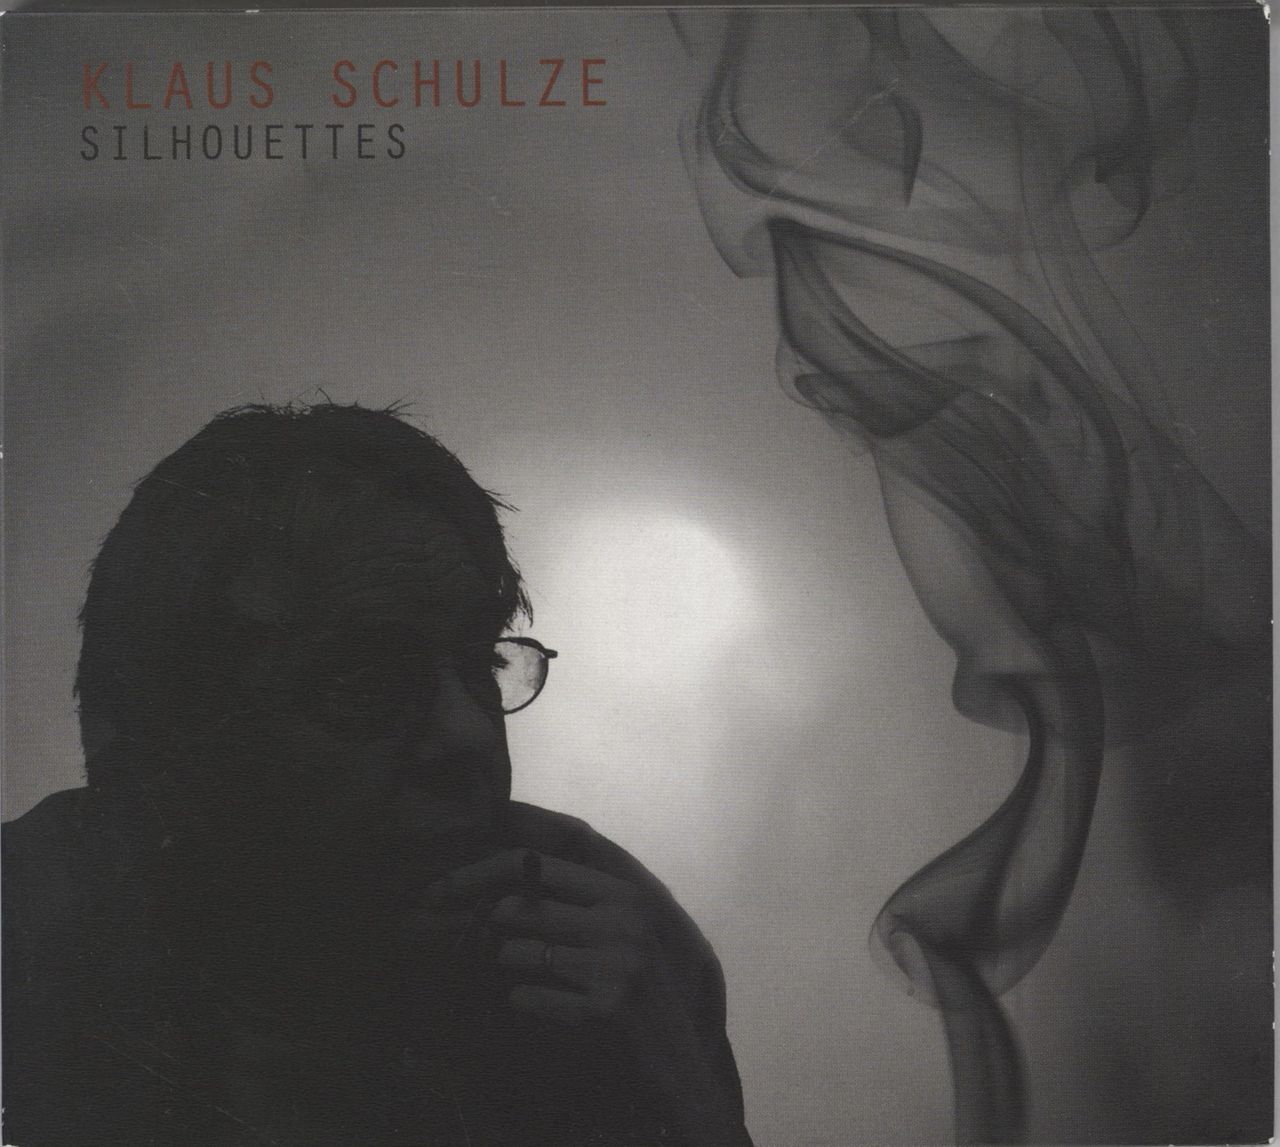 Klaus Schulze Silhouettes German CD album (CDLP) SPV267202CD